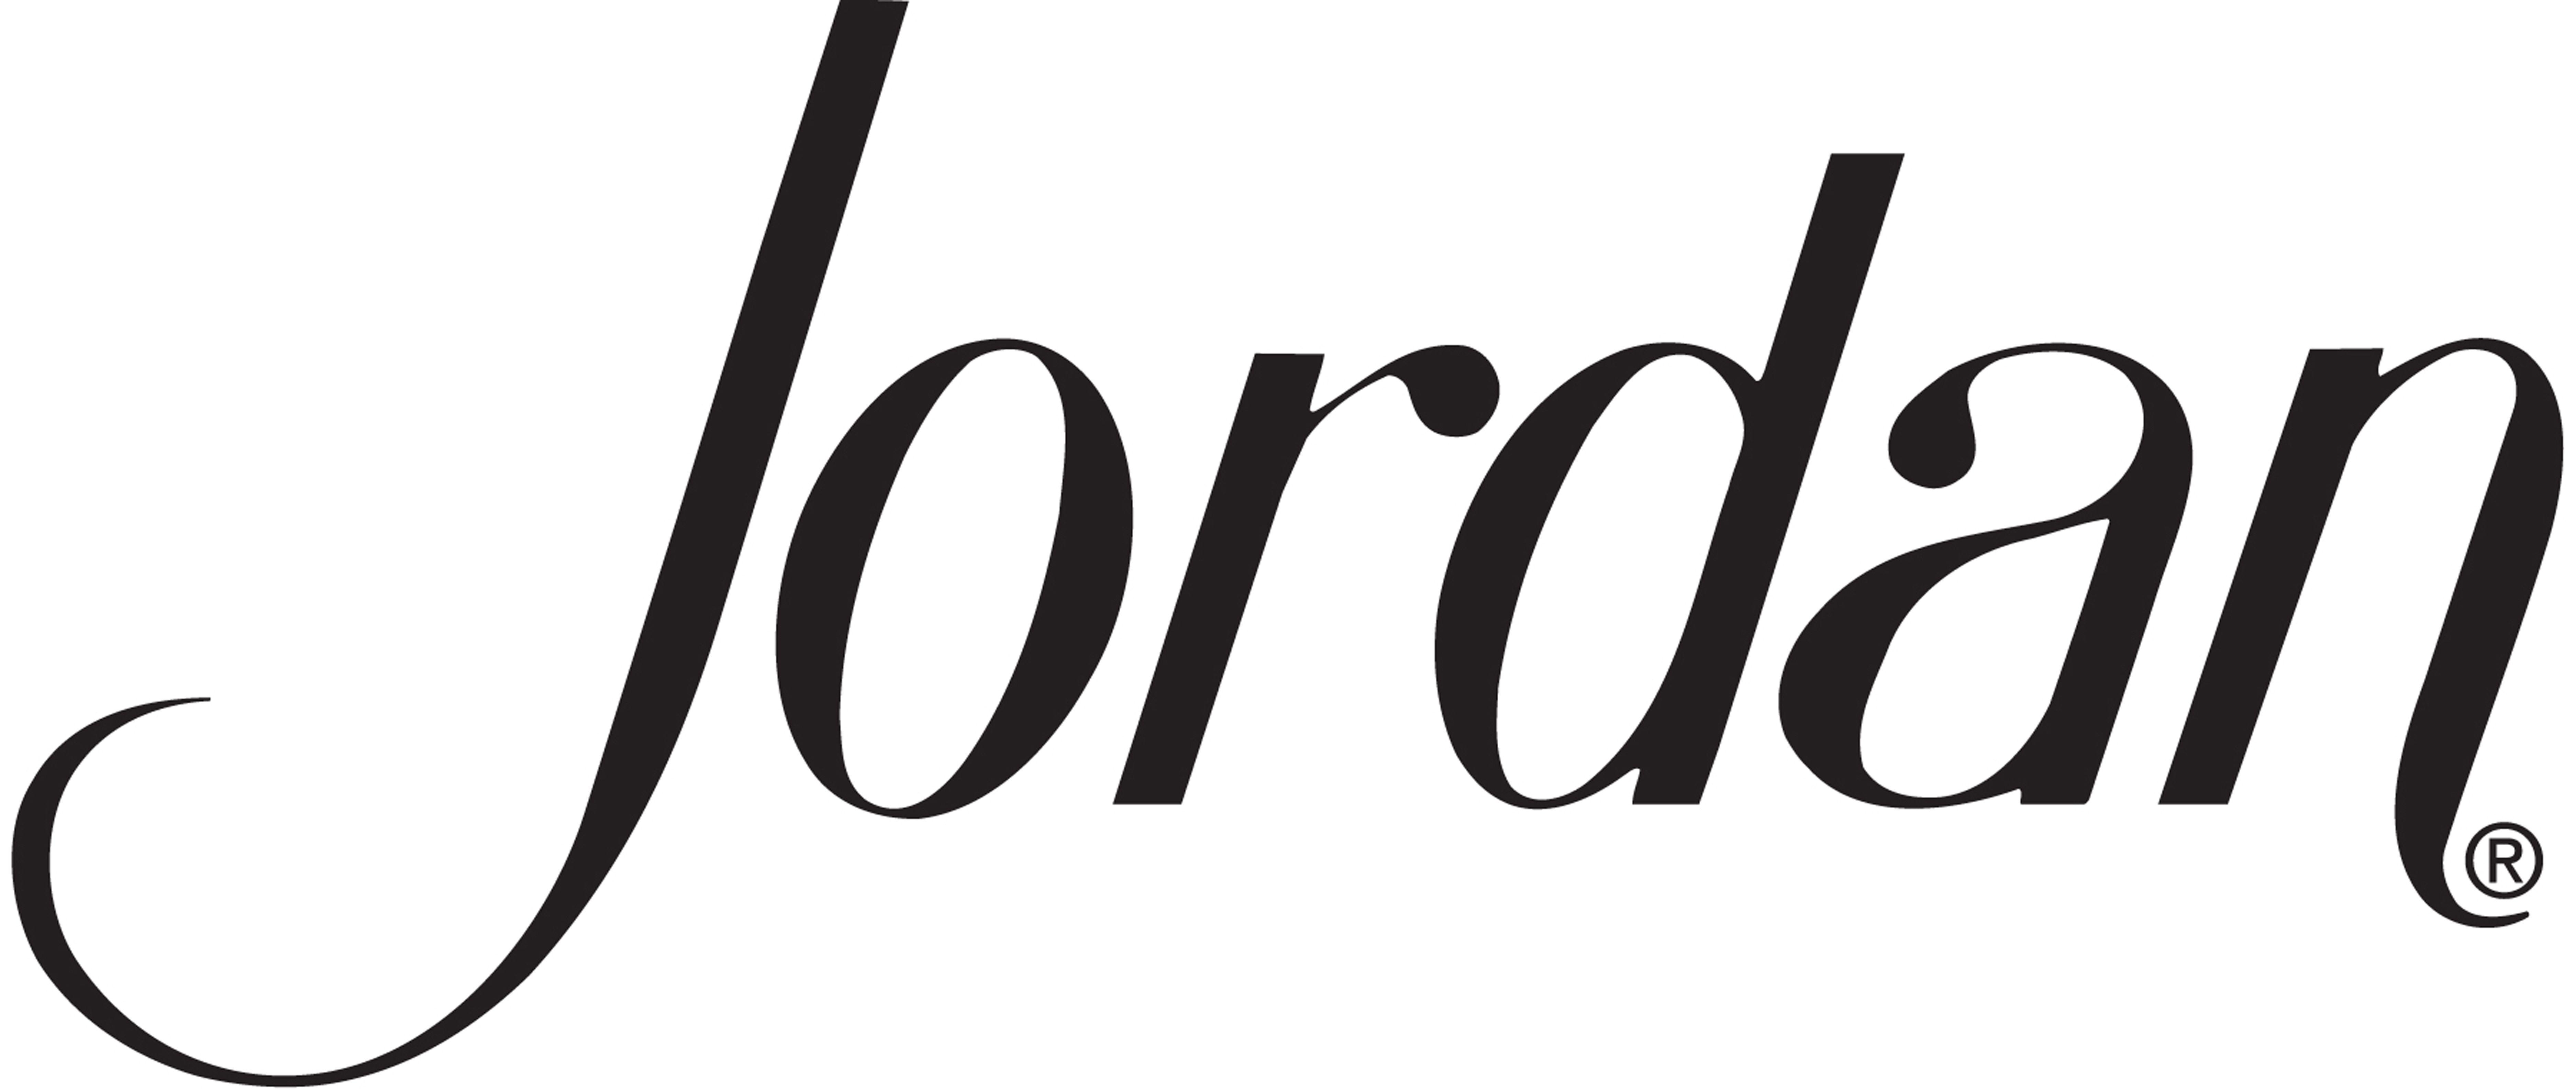 Awesome Jordan Logo - Logos